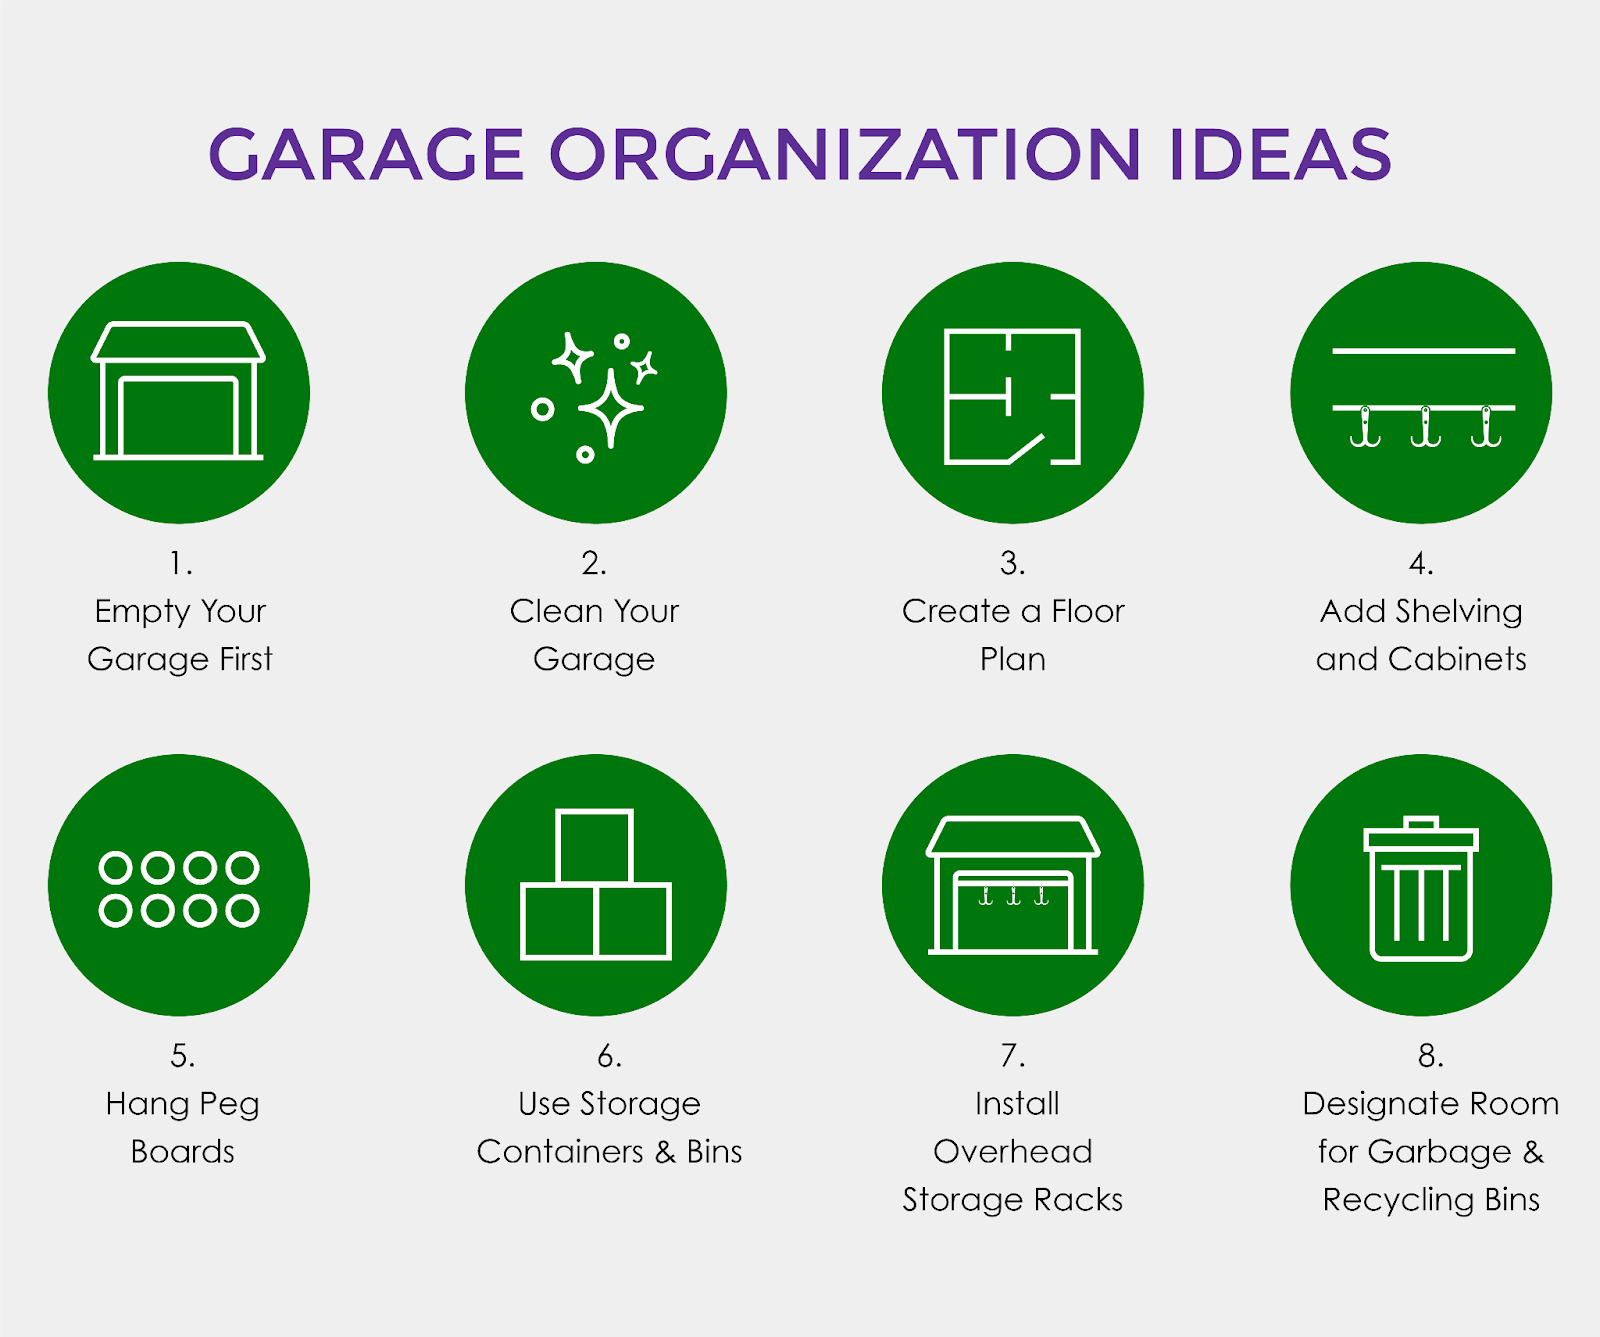 Garage organization ideas